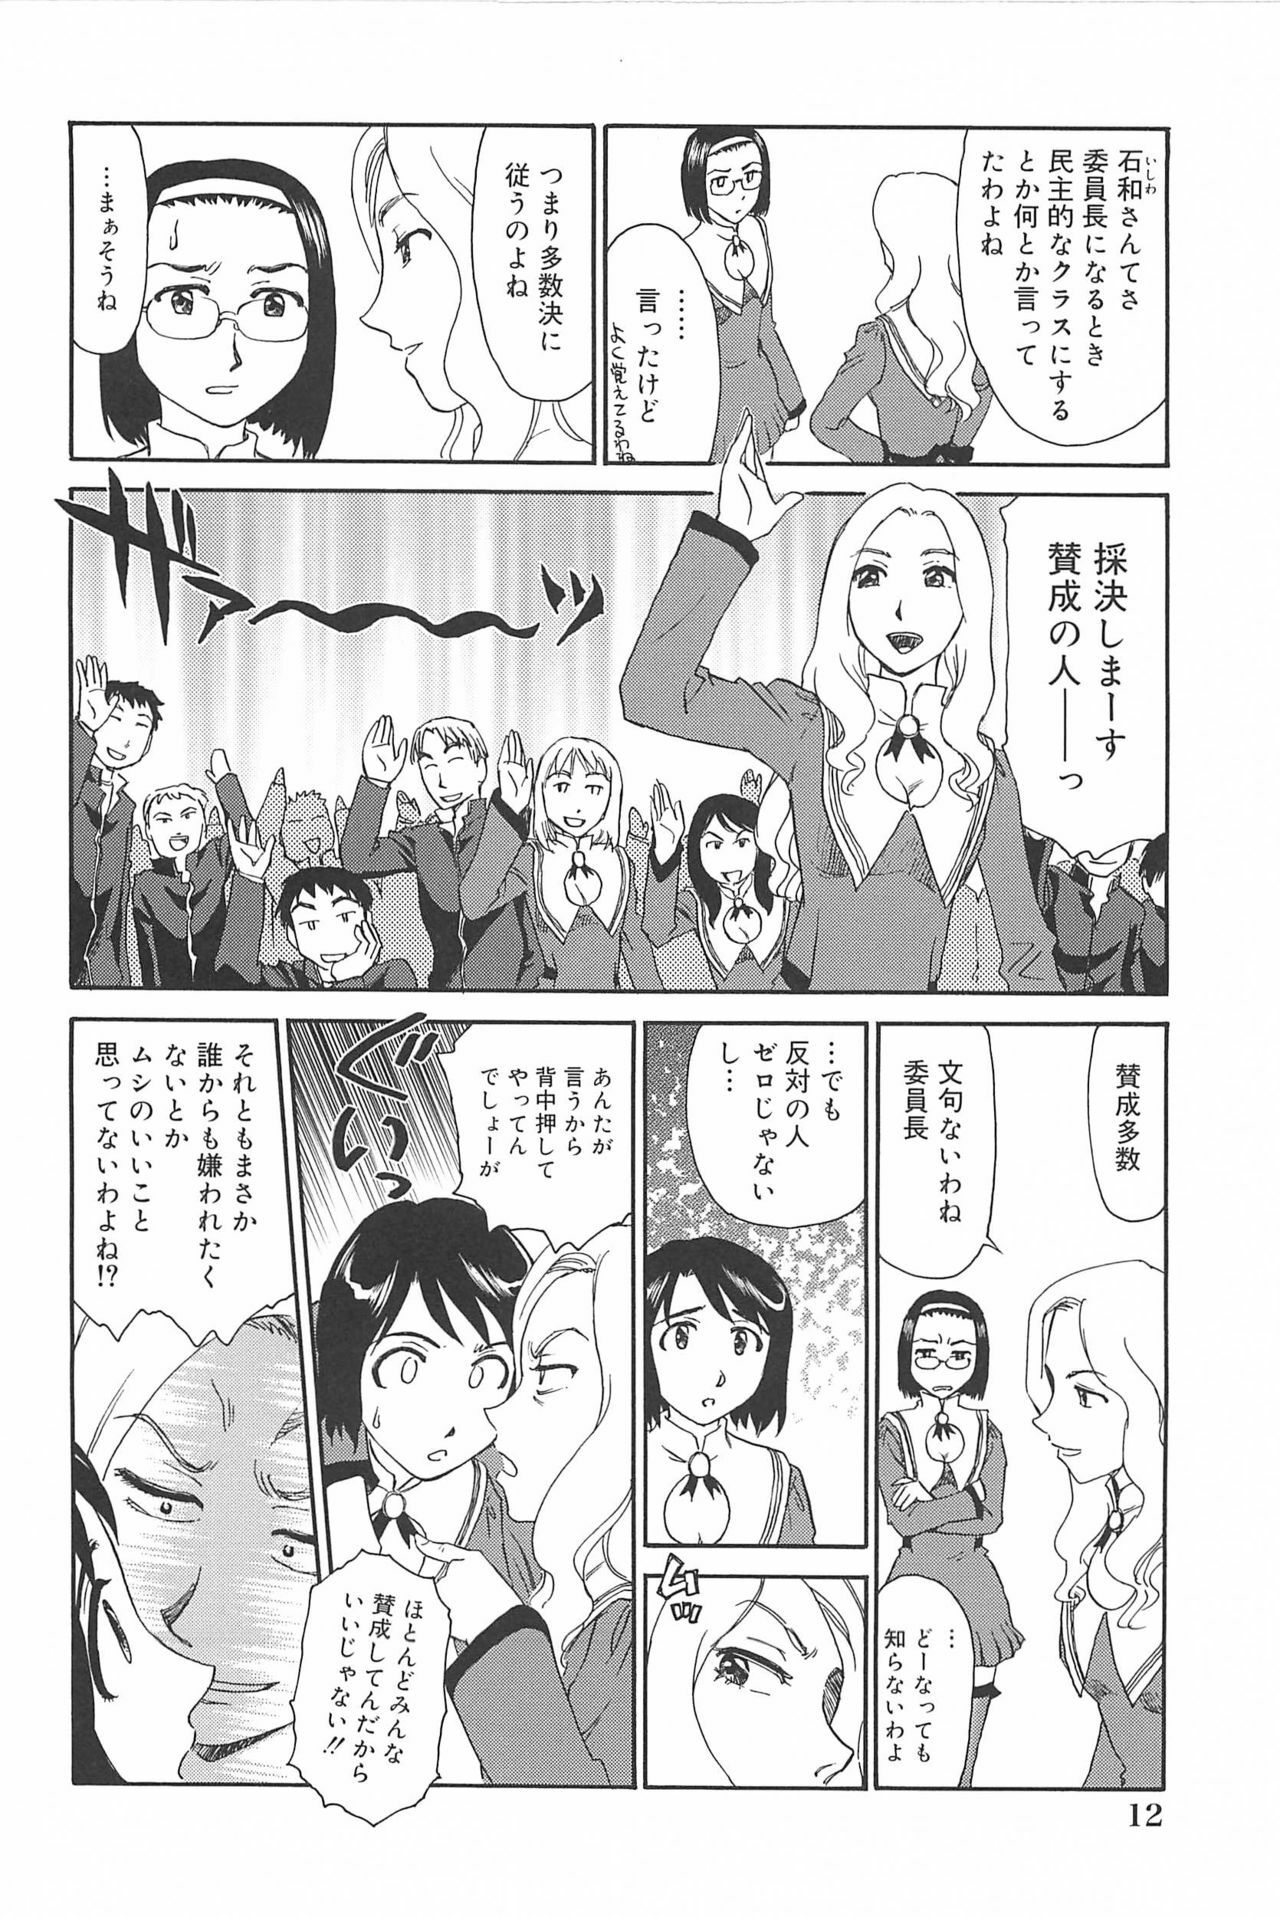 [Suehirogari] Kumo no Michi page 13 full